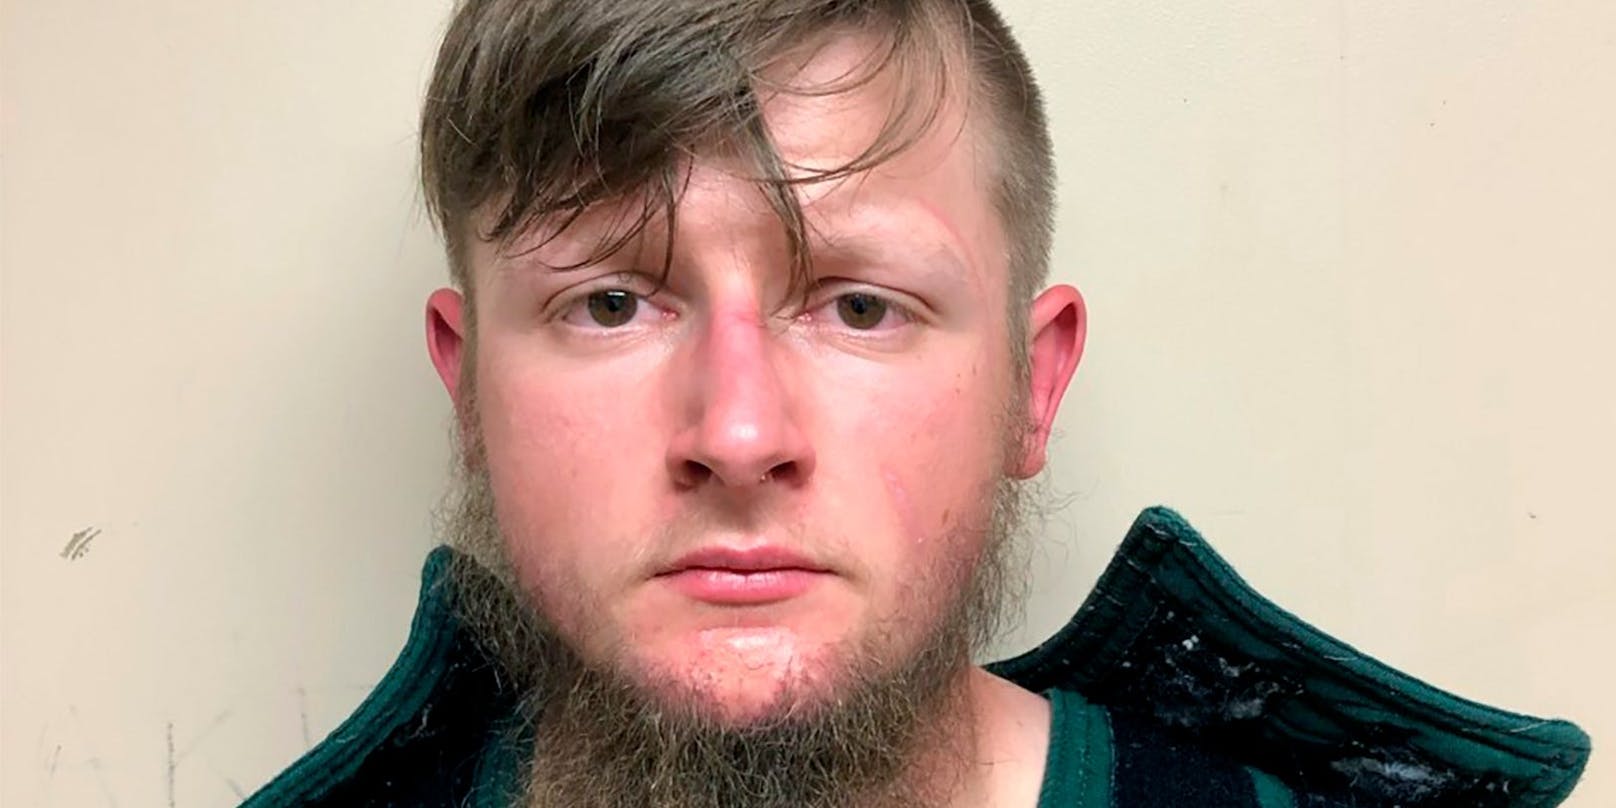 Der 21-jährige Robert Aaron Long soll in drei Massage-Salons im US-Staat Georgia 8 Menschen erschossen haben.